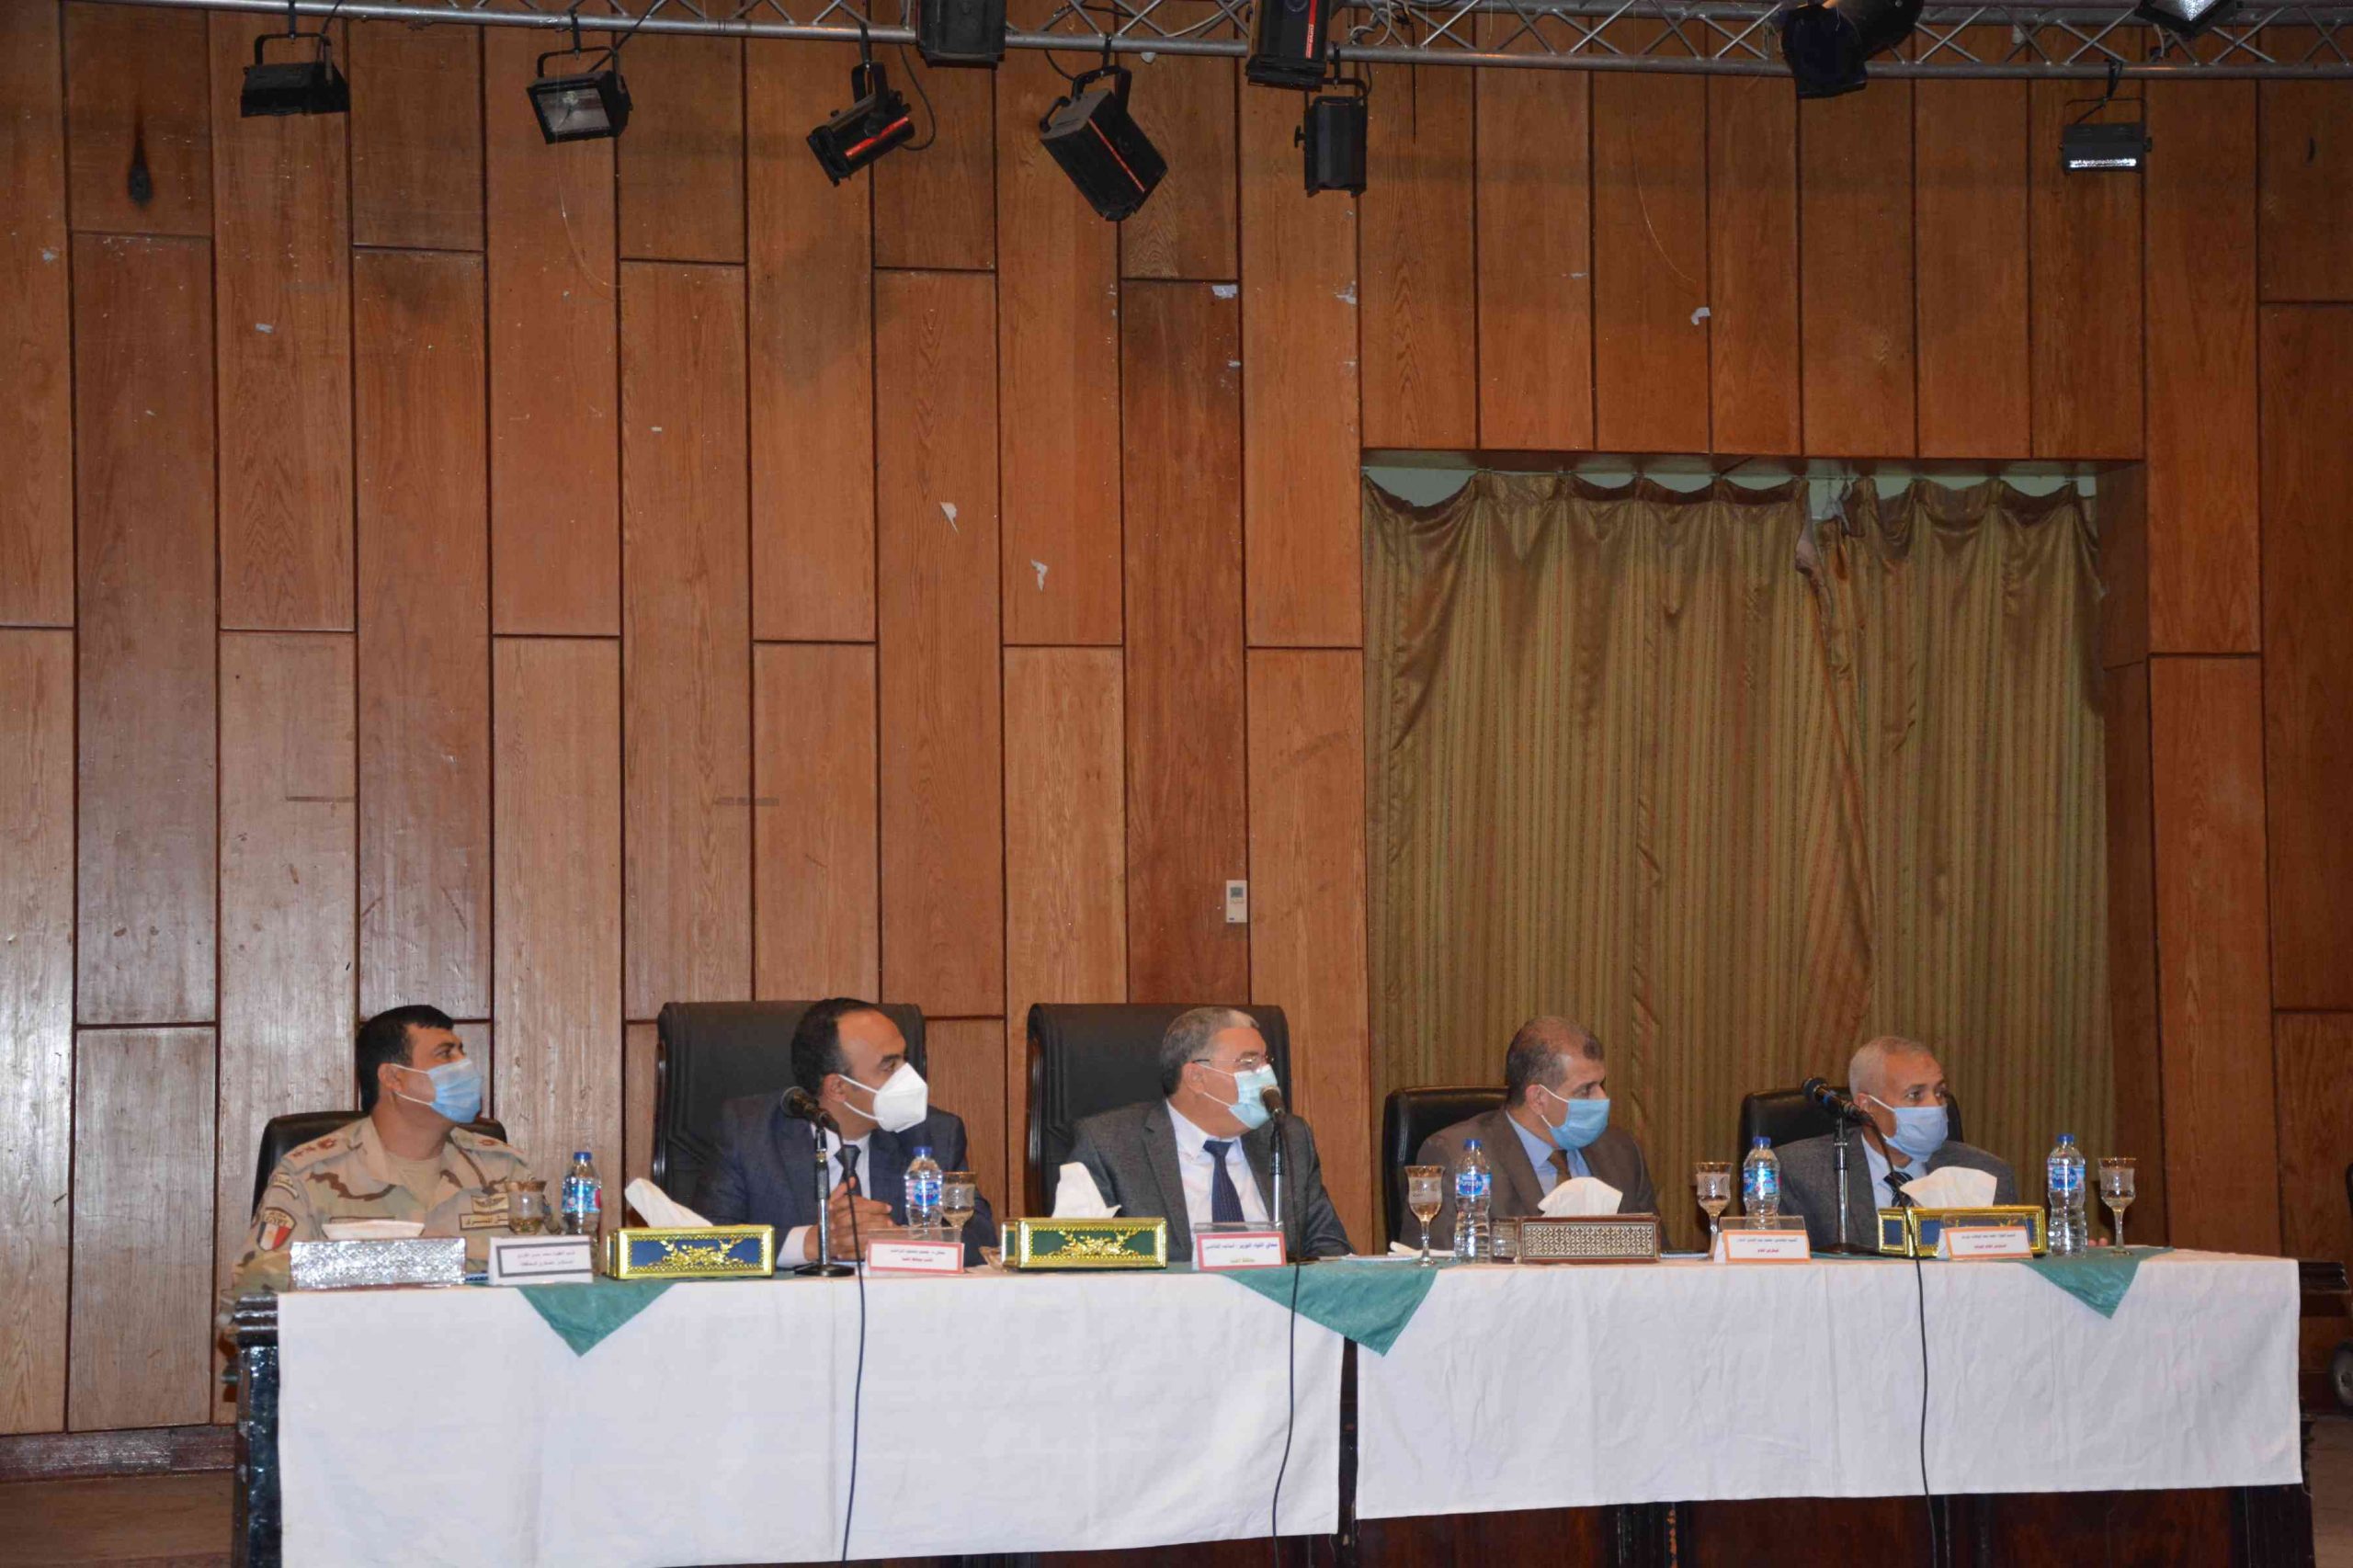   محافظ المنيا يعقد اجتماعاً مع جميع الأجهزة التنفيذية لمتابعة توصيات مجلس الوزراء